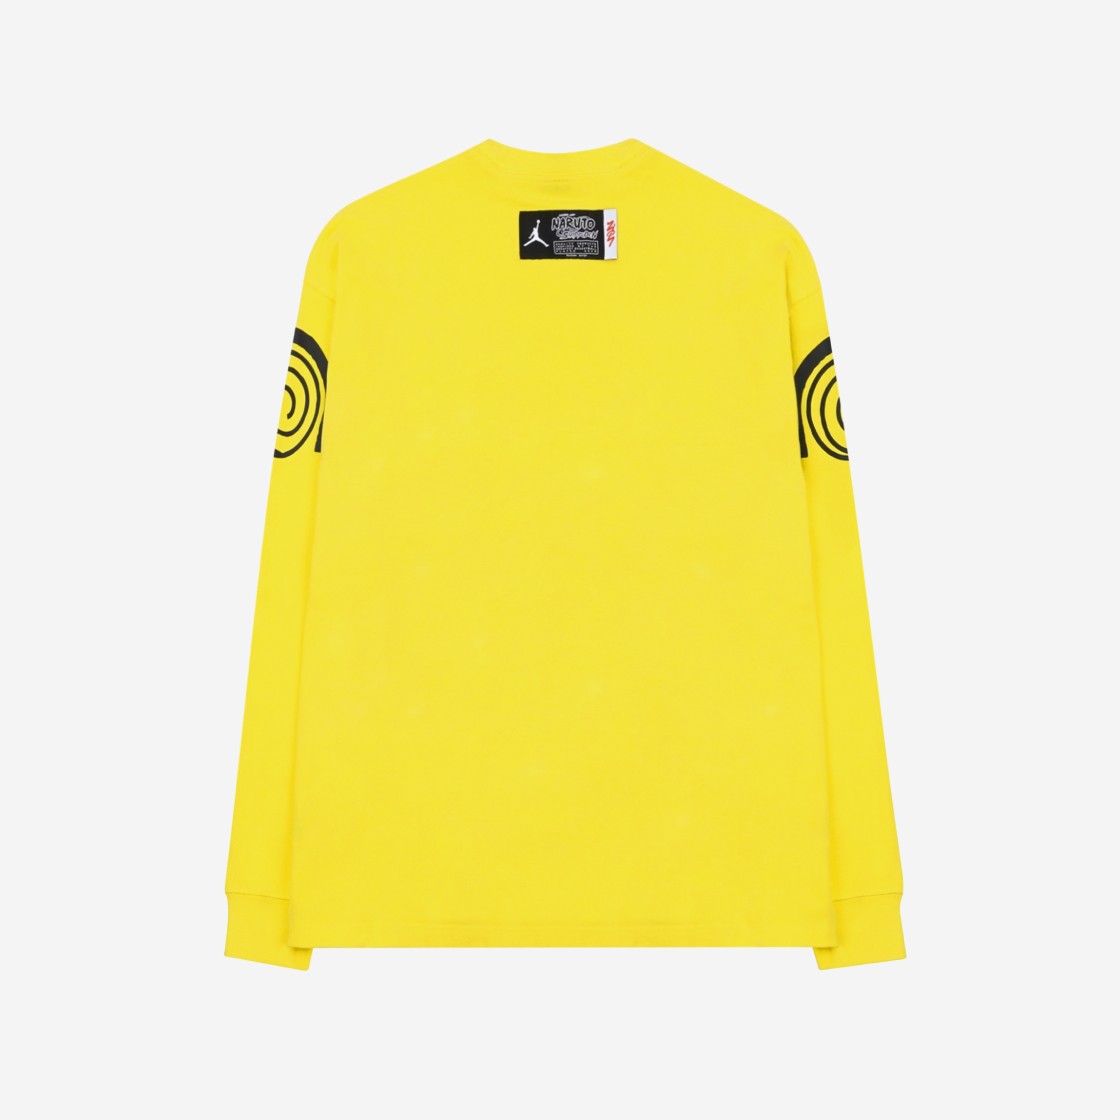 조던 x 자이언 나루토 롱슬리브 티셔츠 레몬 워시 - 아시아 DR1445-721